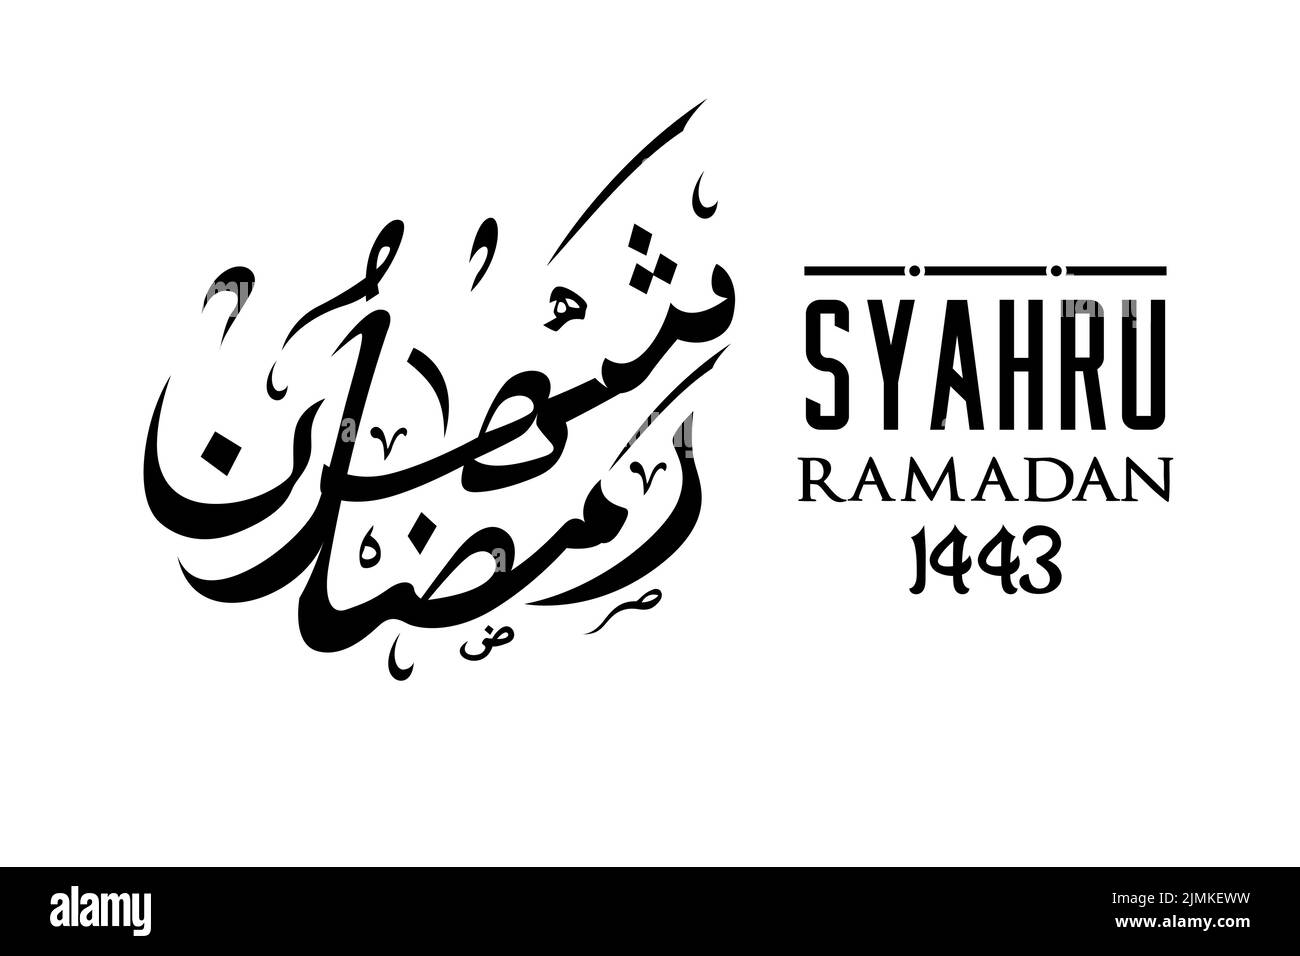 Syahru Ramadan écriture arabe Calligraphie Design inspiration Illustration de Vecteur